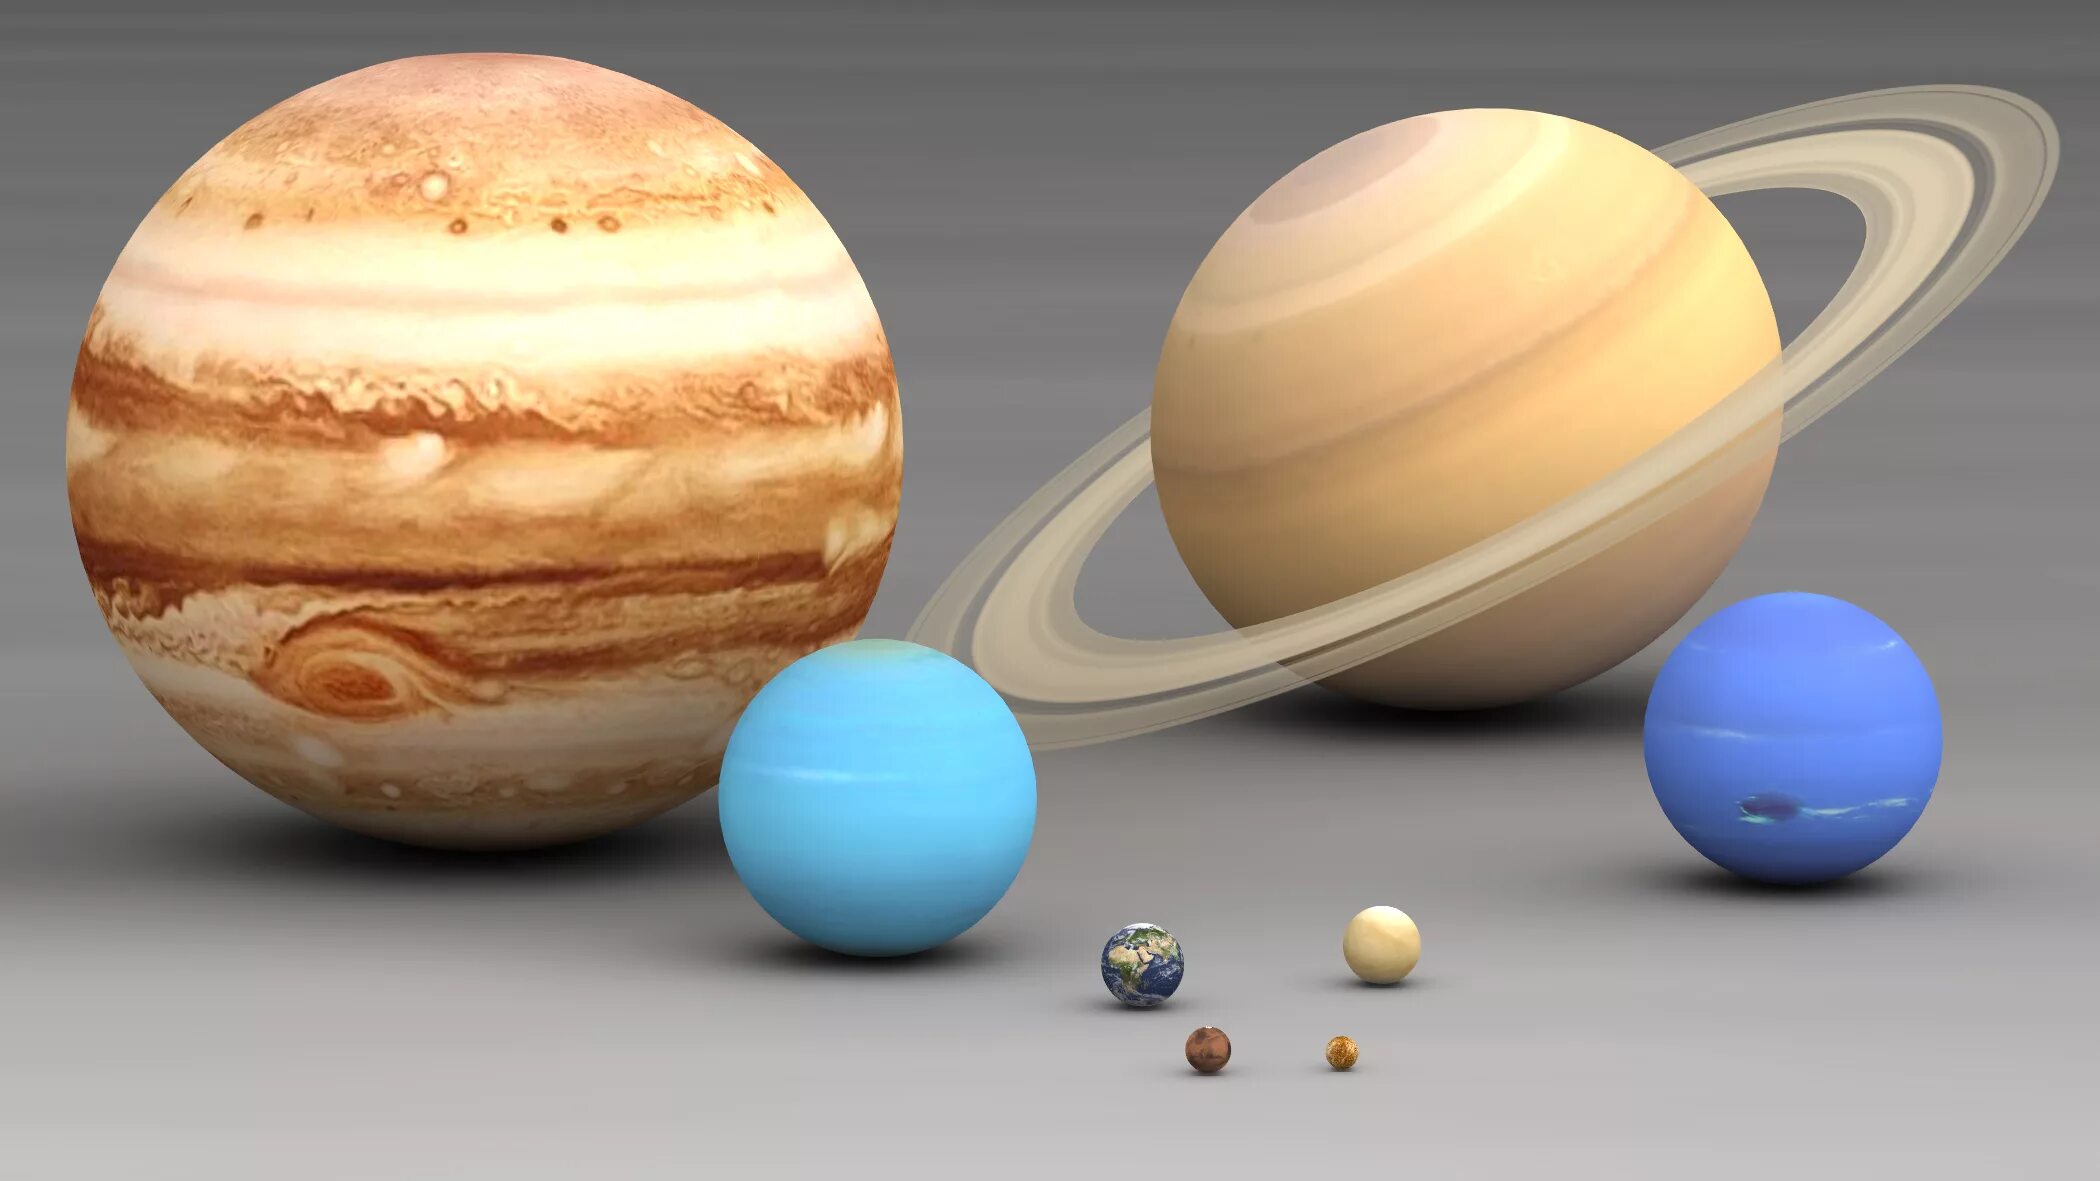 Сравнение размеров юпитера. Планеты Юпитер Сатурн Уран Нептун. Марс Уран Нептун. Земля Нептун Уран Сатурн Юпитер. Планеты гиганты Юпитер Сатурн Уран Нептун.